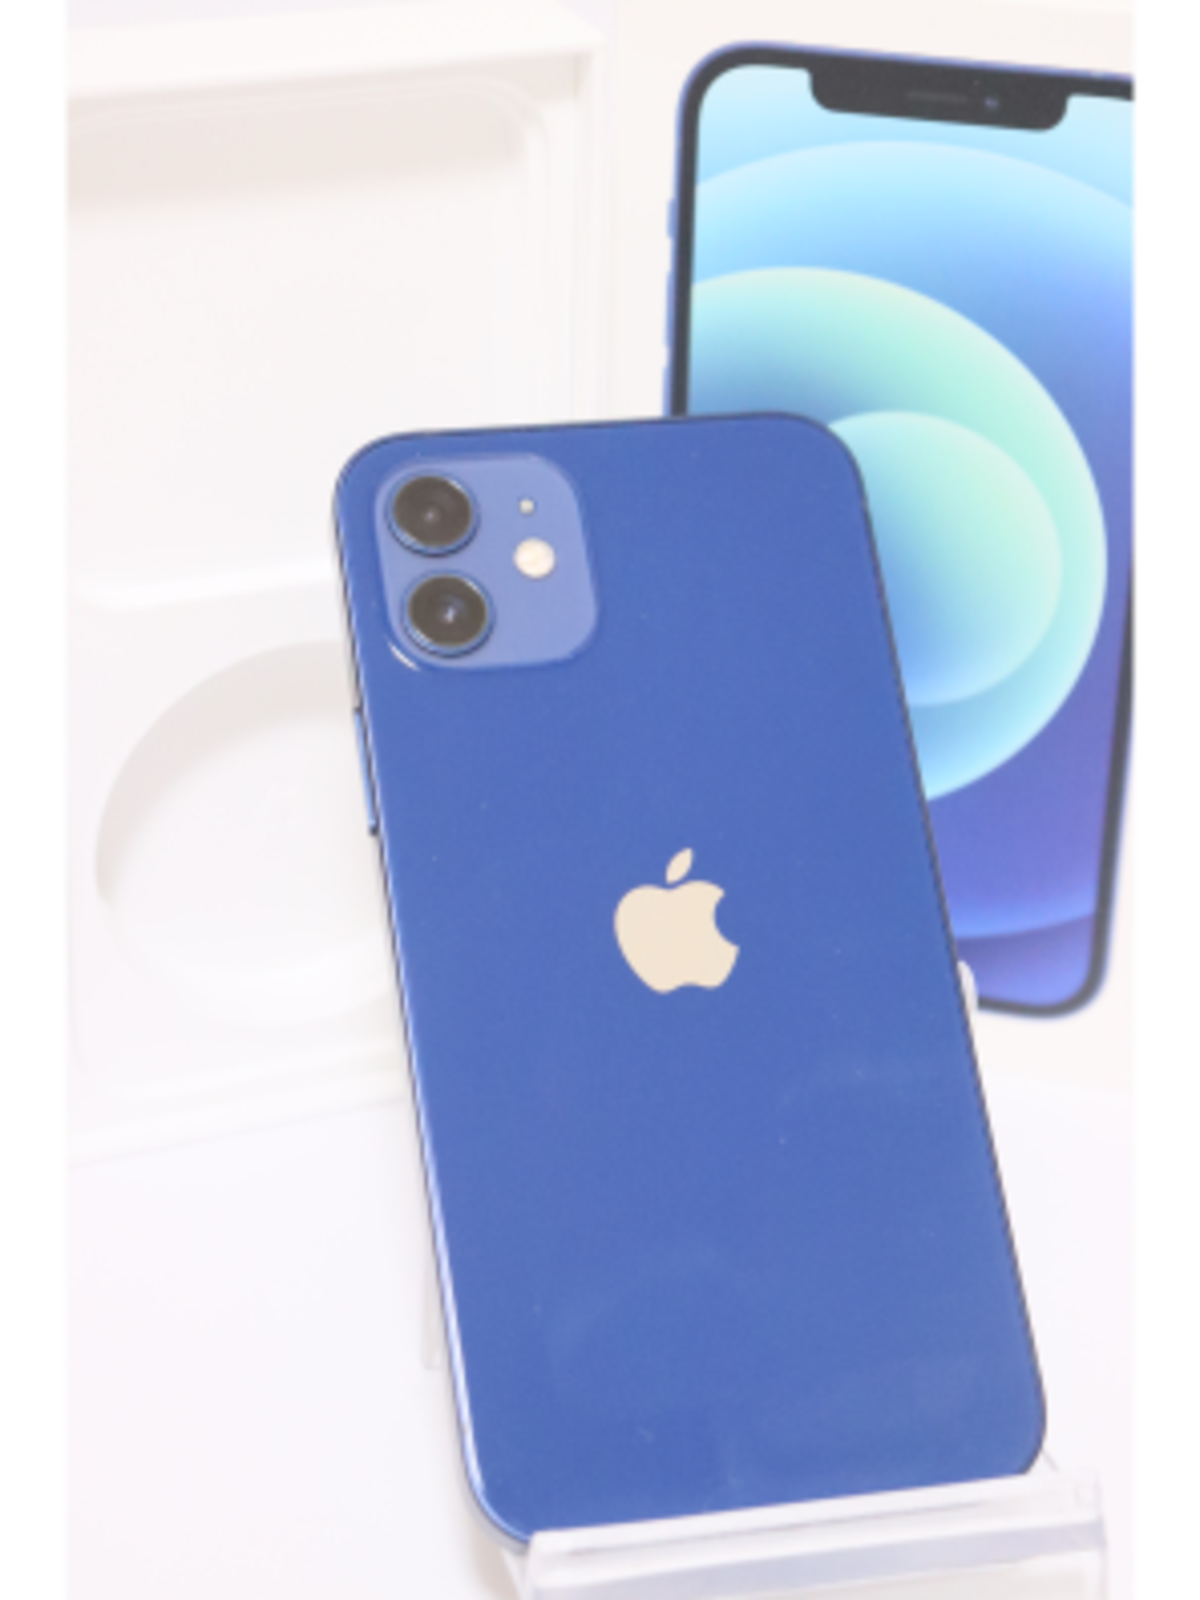 iPhone 12 256 GB  blue SIMフリー